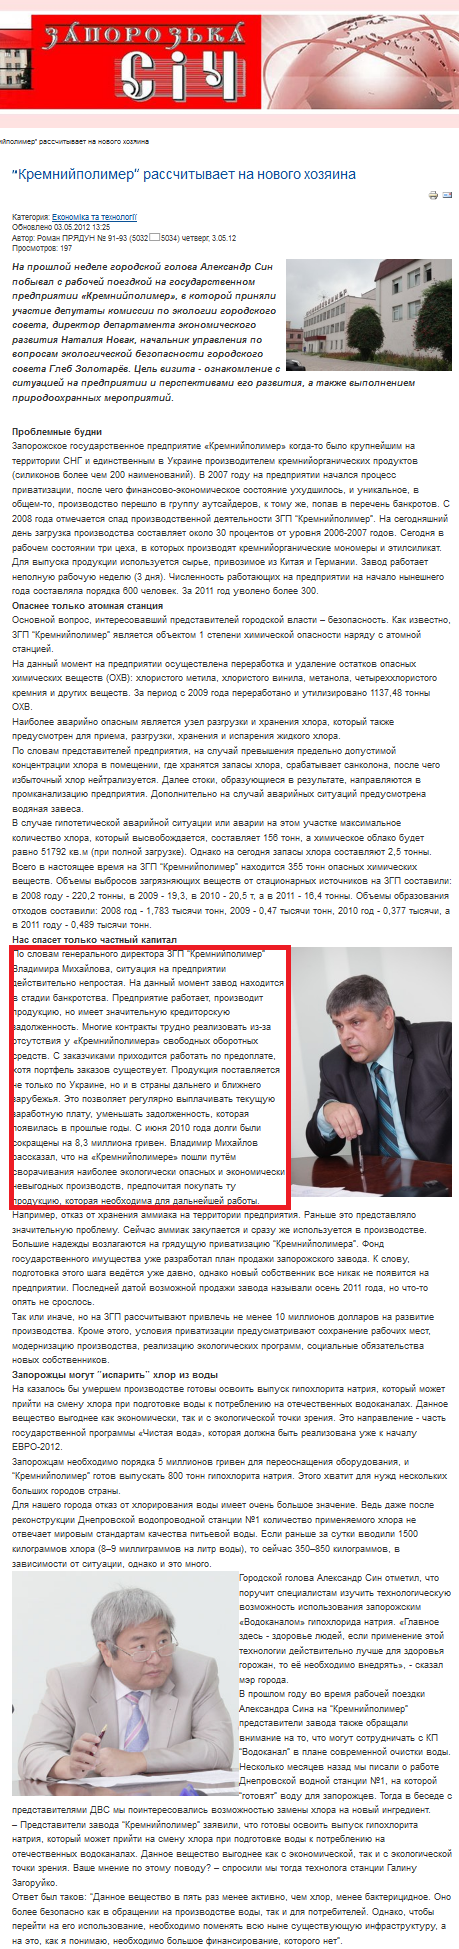 http://www.sich.zp.ua/index.php/ru/ekonomika-i-tekhnologii/1180-kremnijpolimer-rasschityvaet-na-novogo-khozyaina